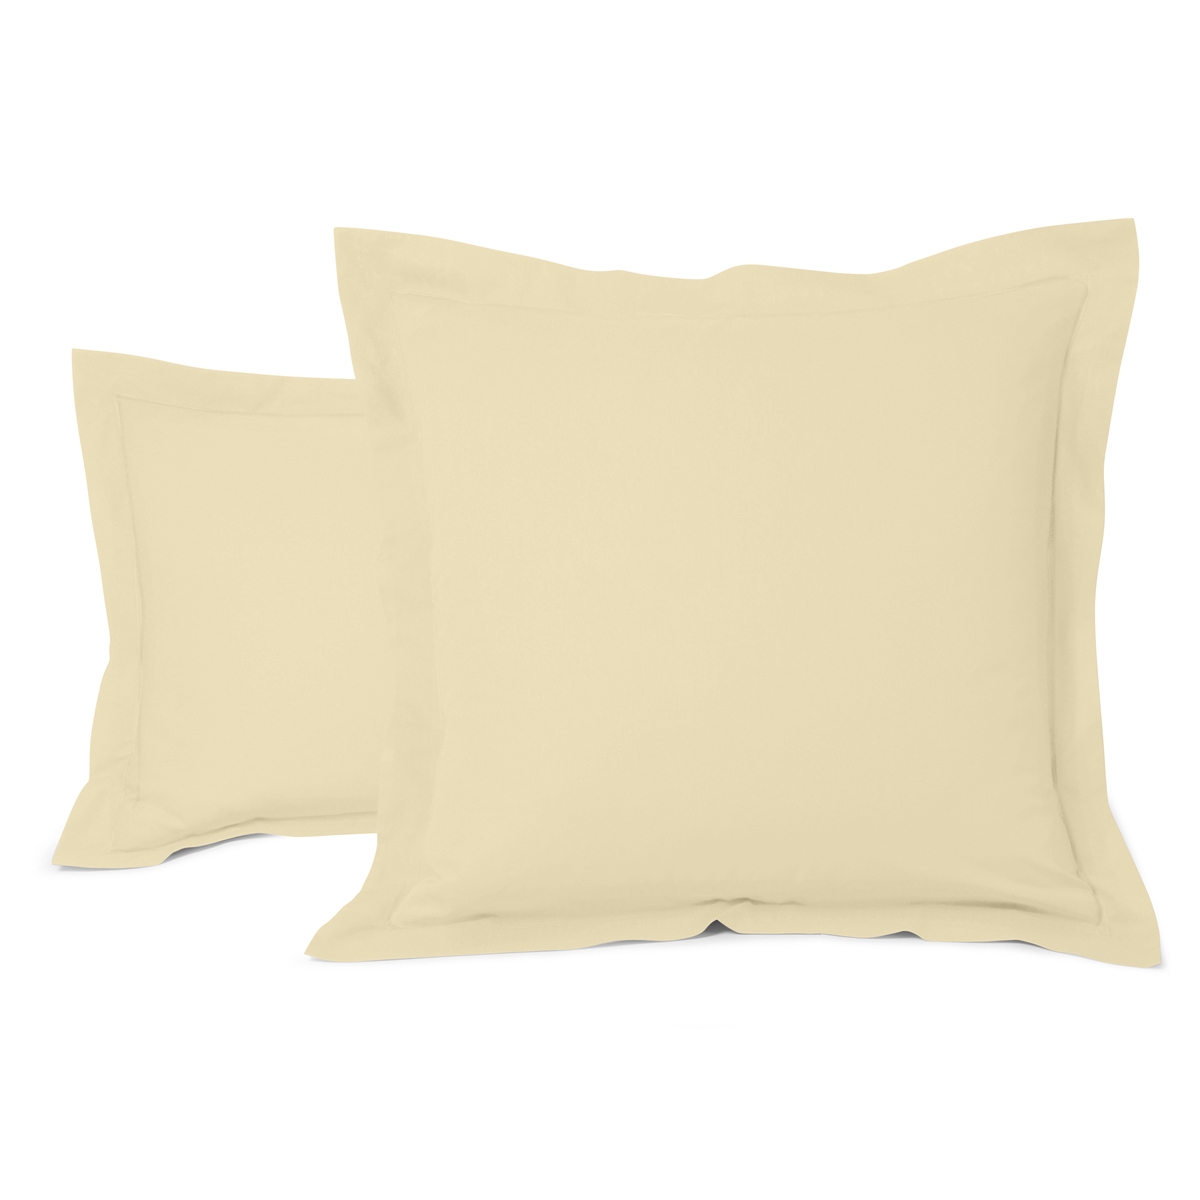 Cotton Pillow Cases ivory | Bed linen | Tradition des Vosges